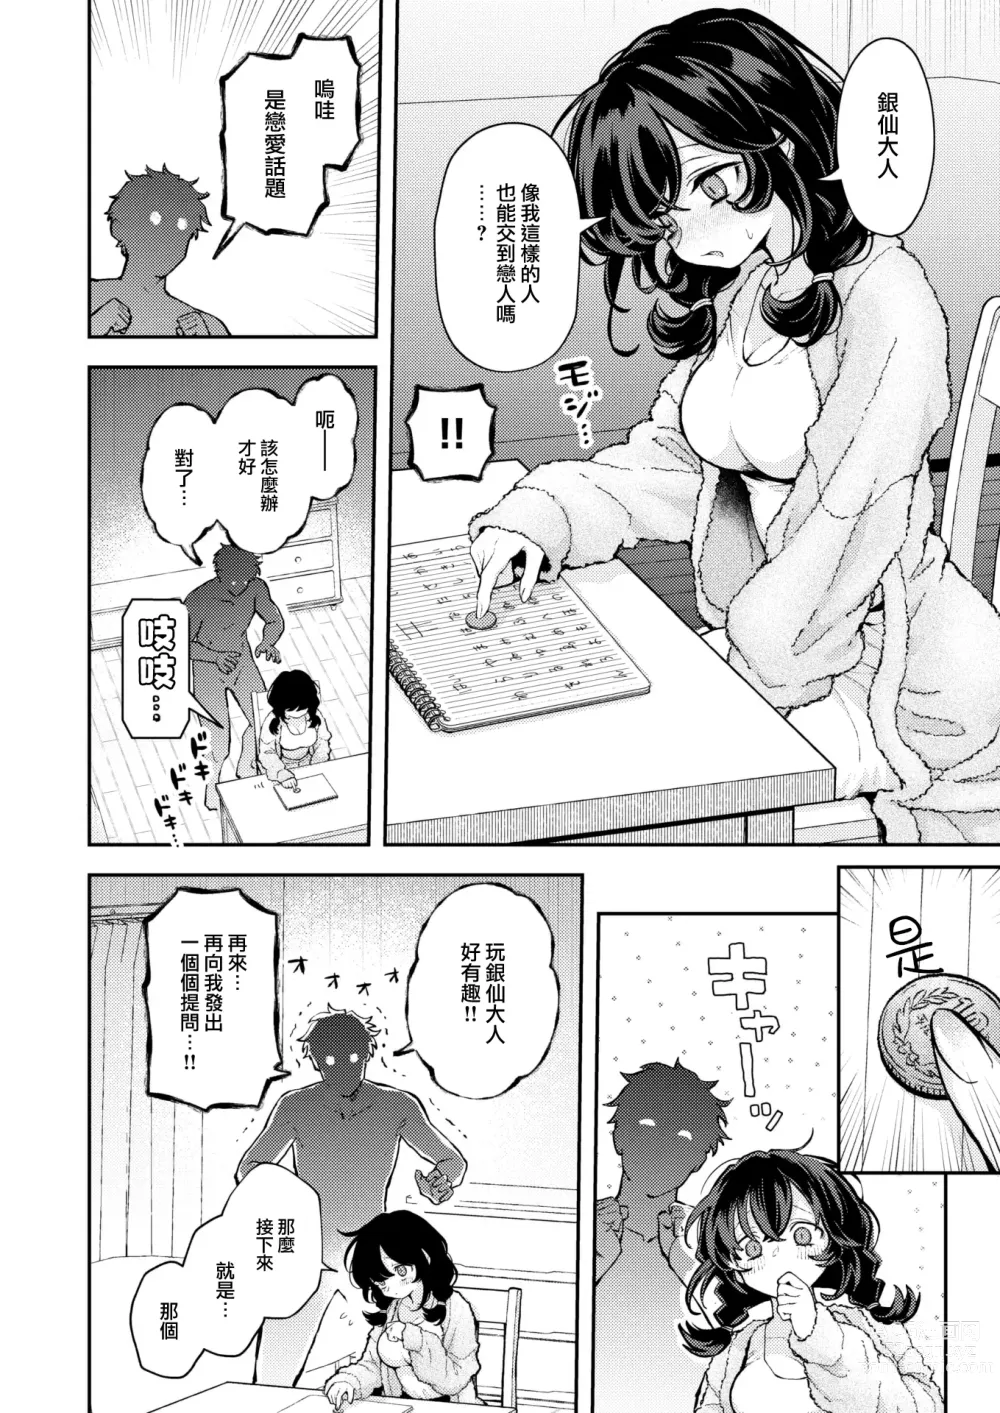 Page 7 of manga Hitori de Shinaide